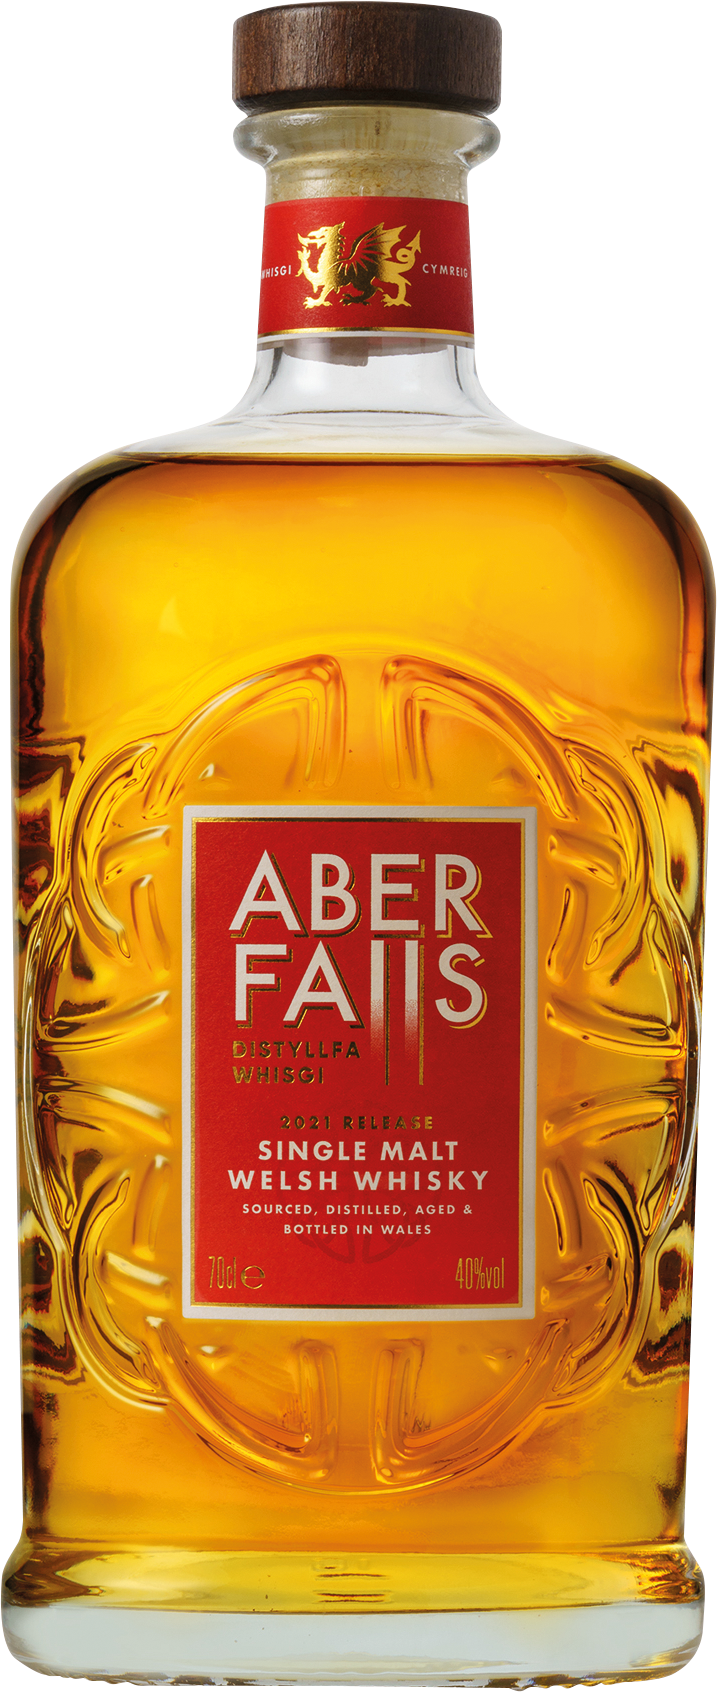 Single Malt Welsh Whisky